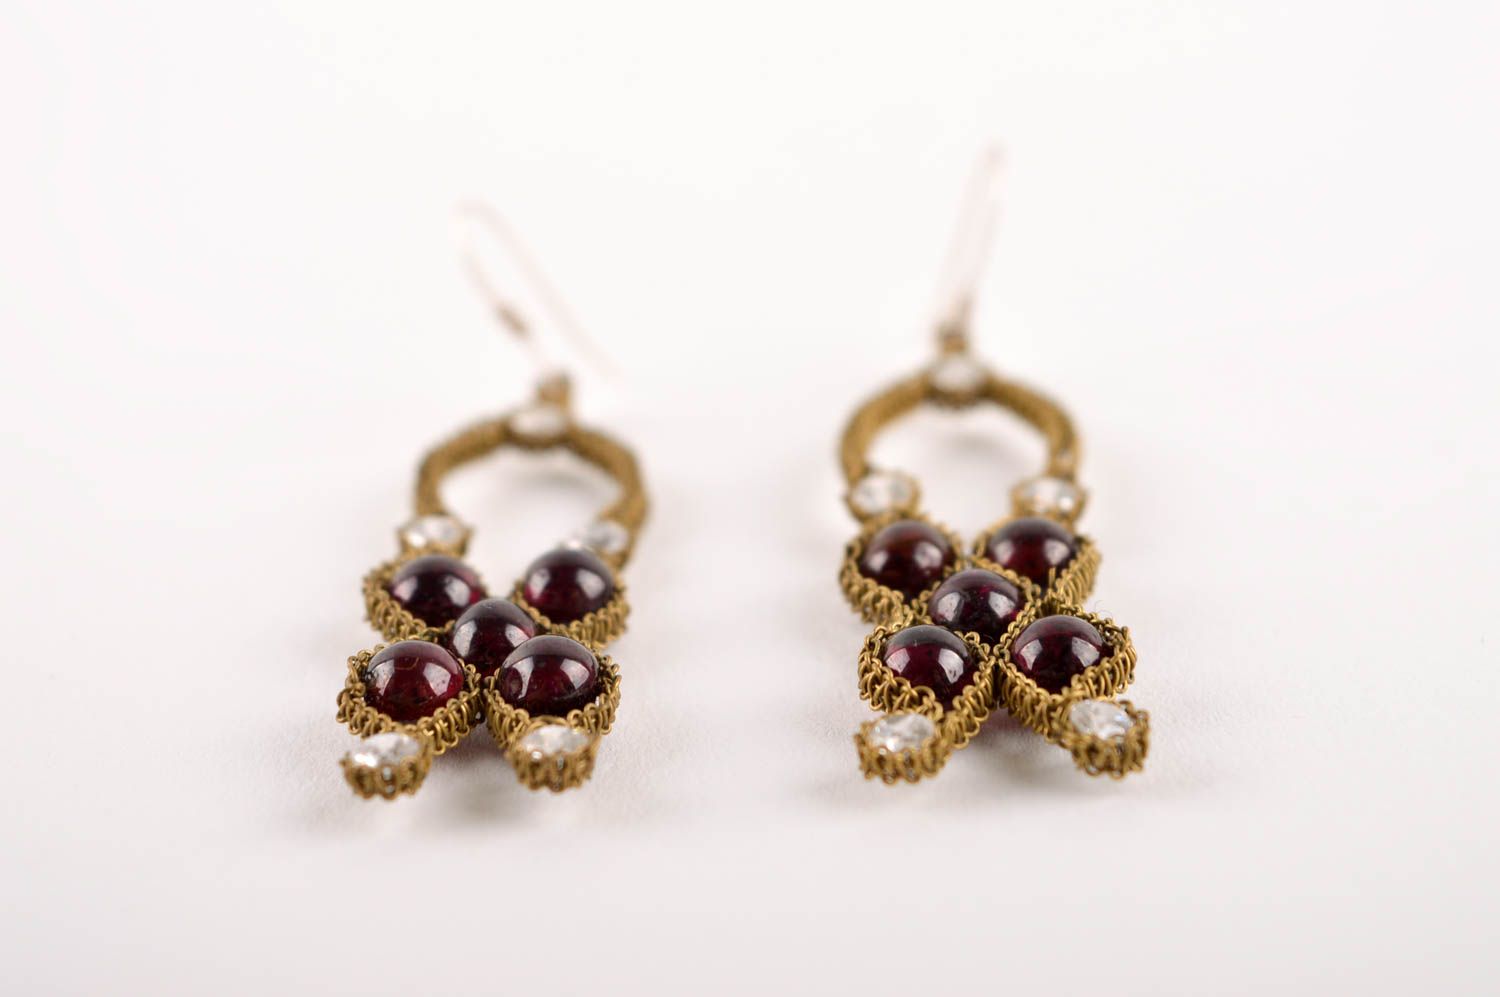 Beautiful handmade metal earrings gemstone earrings artisan jewelry designs photo 3